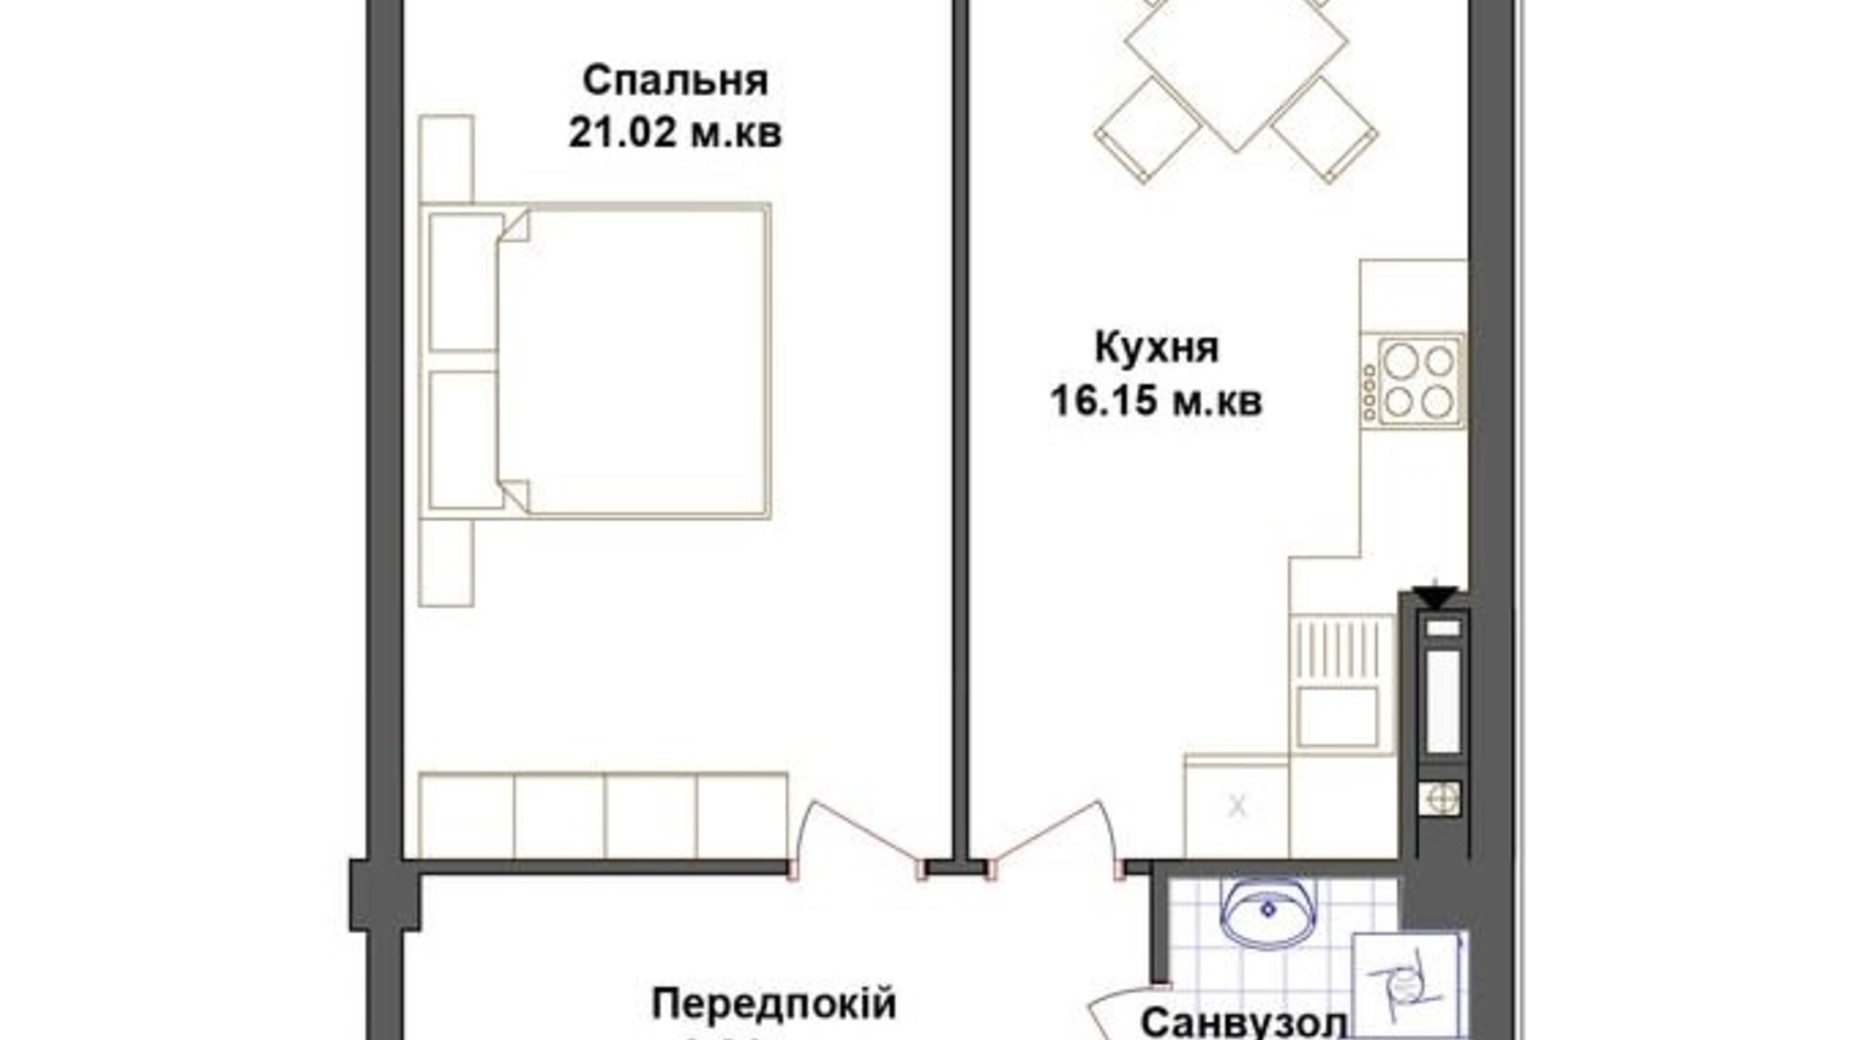 Планировка 1-комнатной квартиры в ЖК Счастье 55.37 м², фото 443224